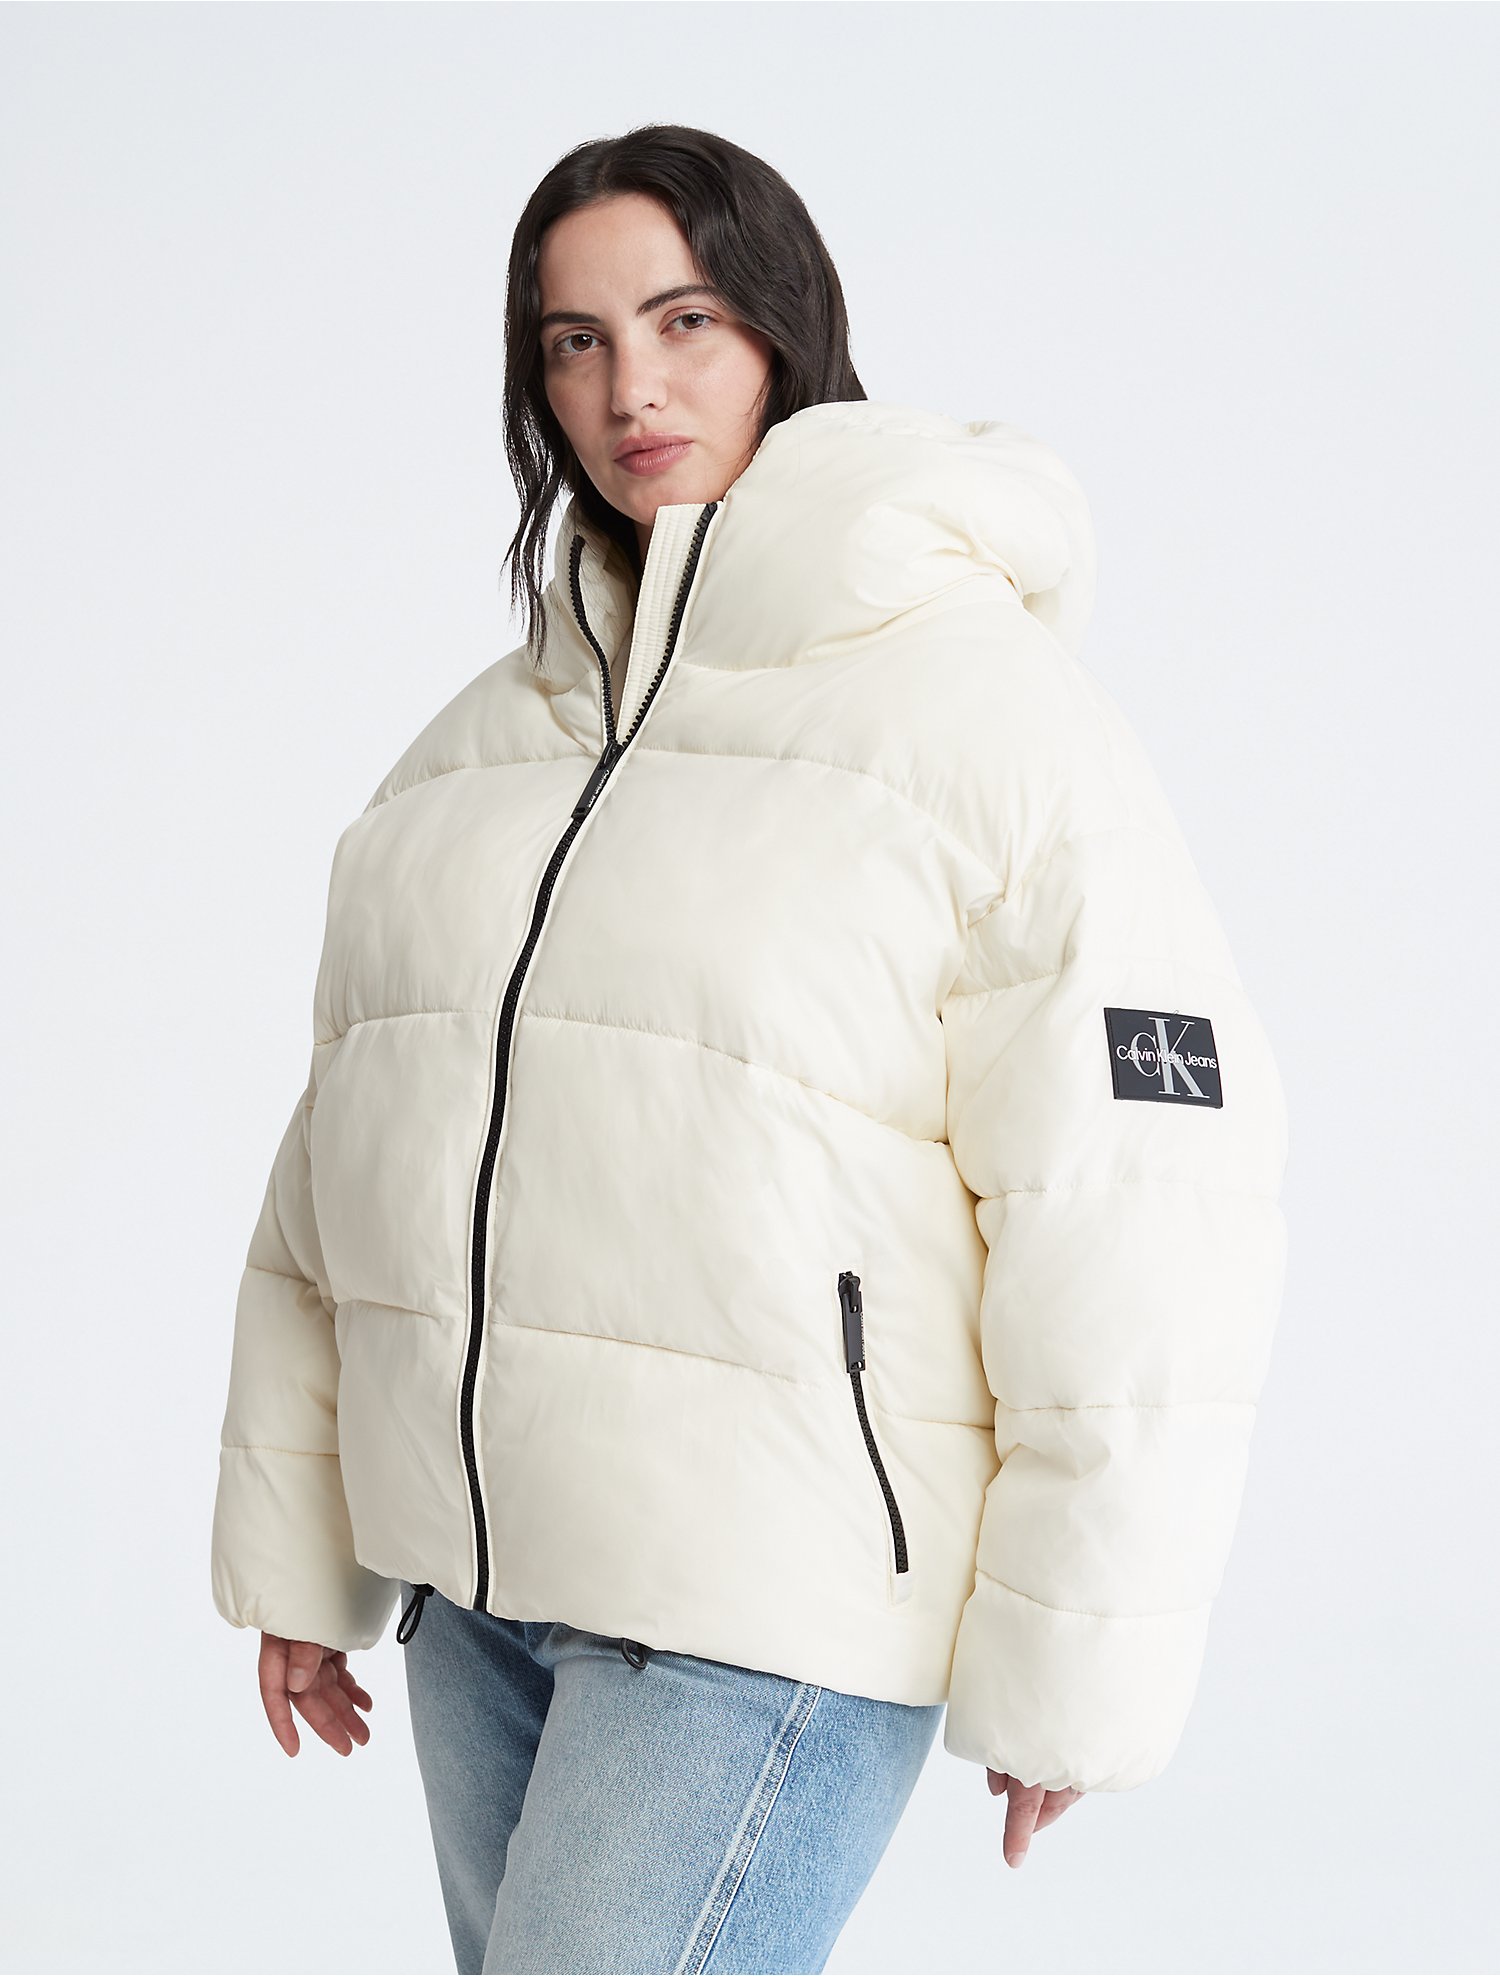 Introducir 77+ imagen calvin klein womens puffer jacket with hood